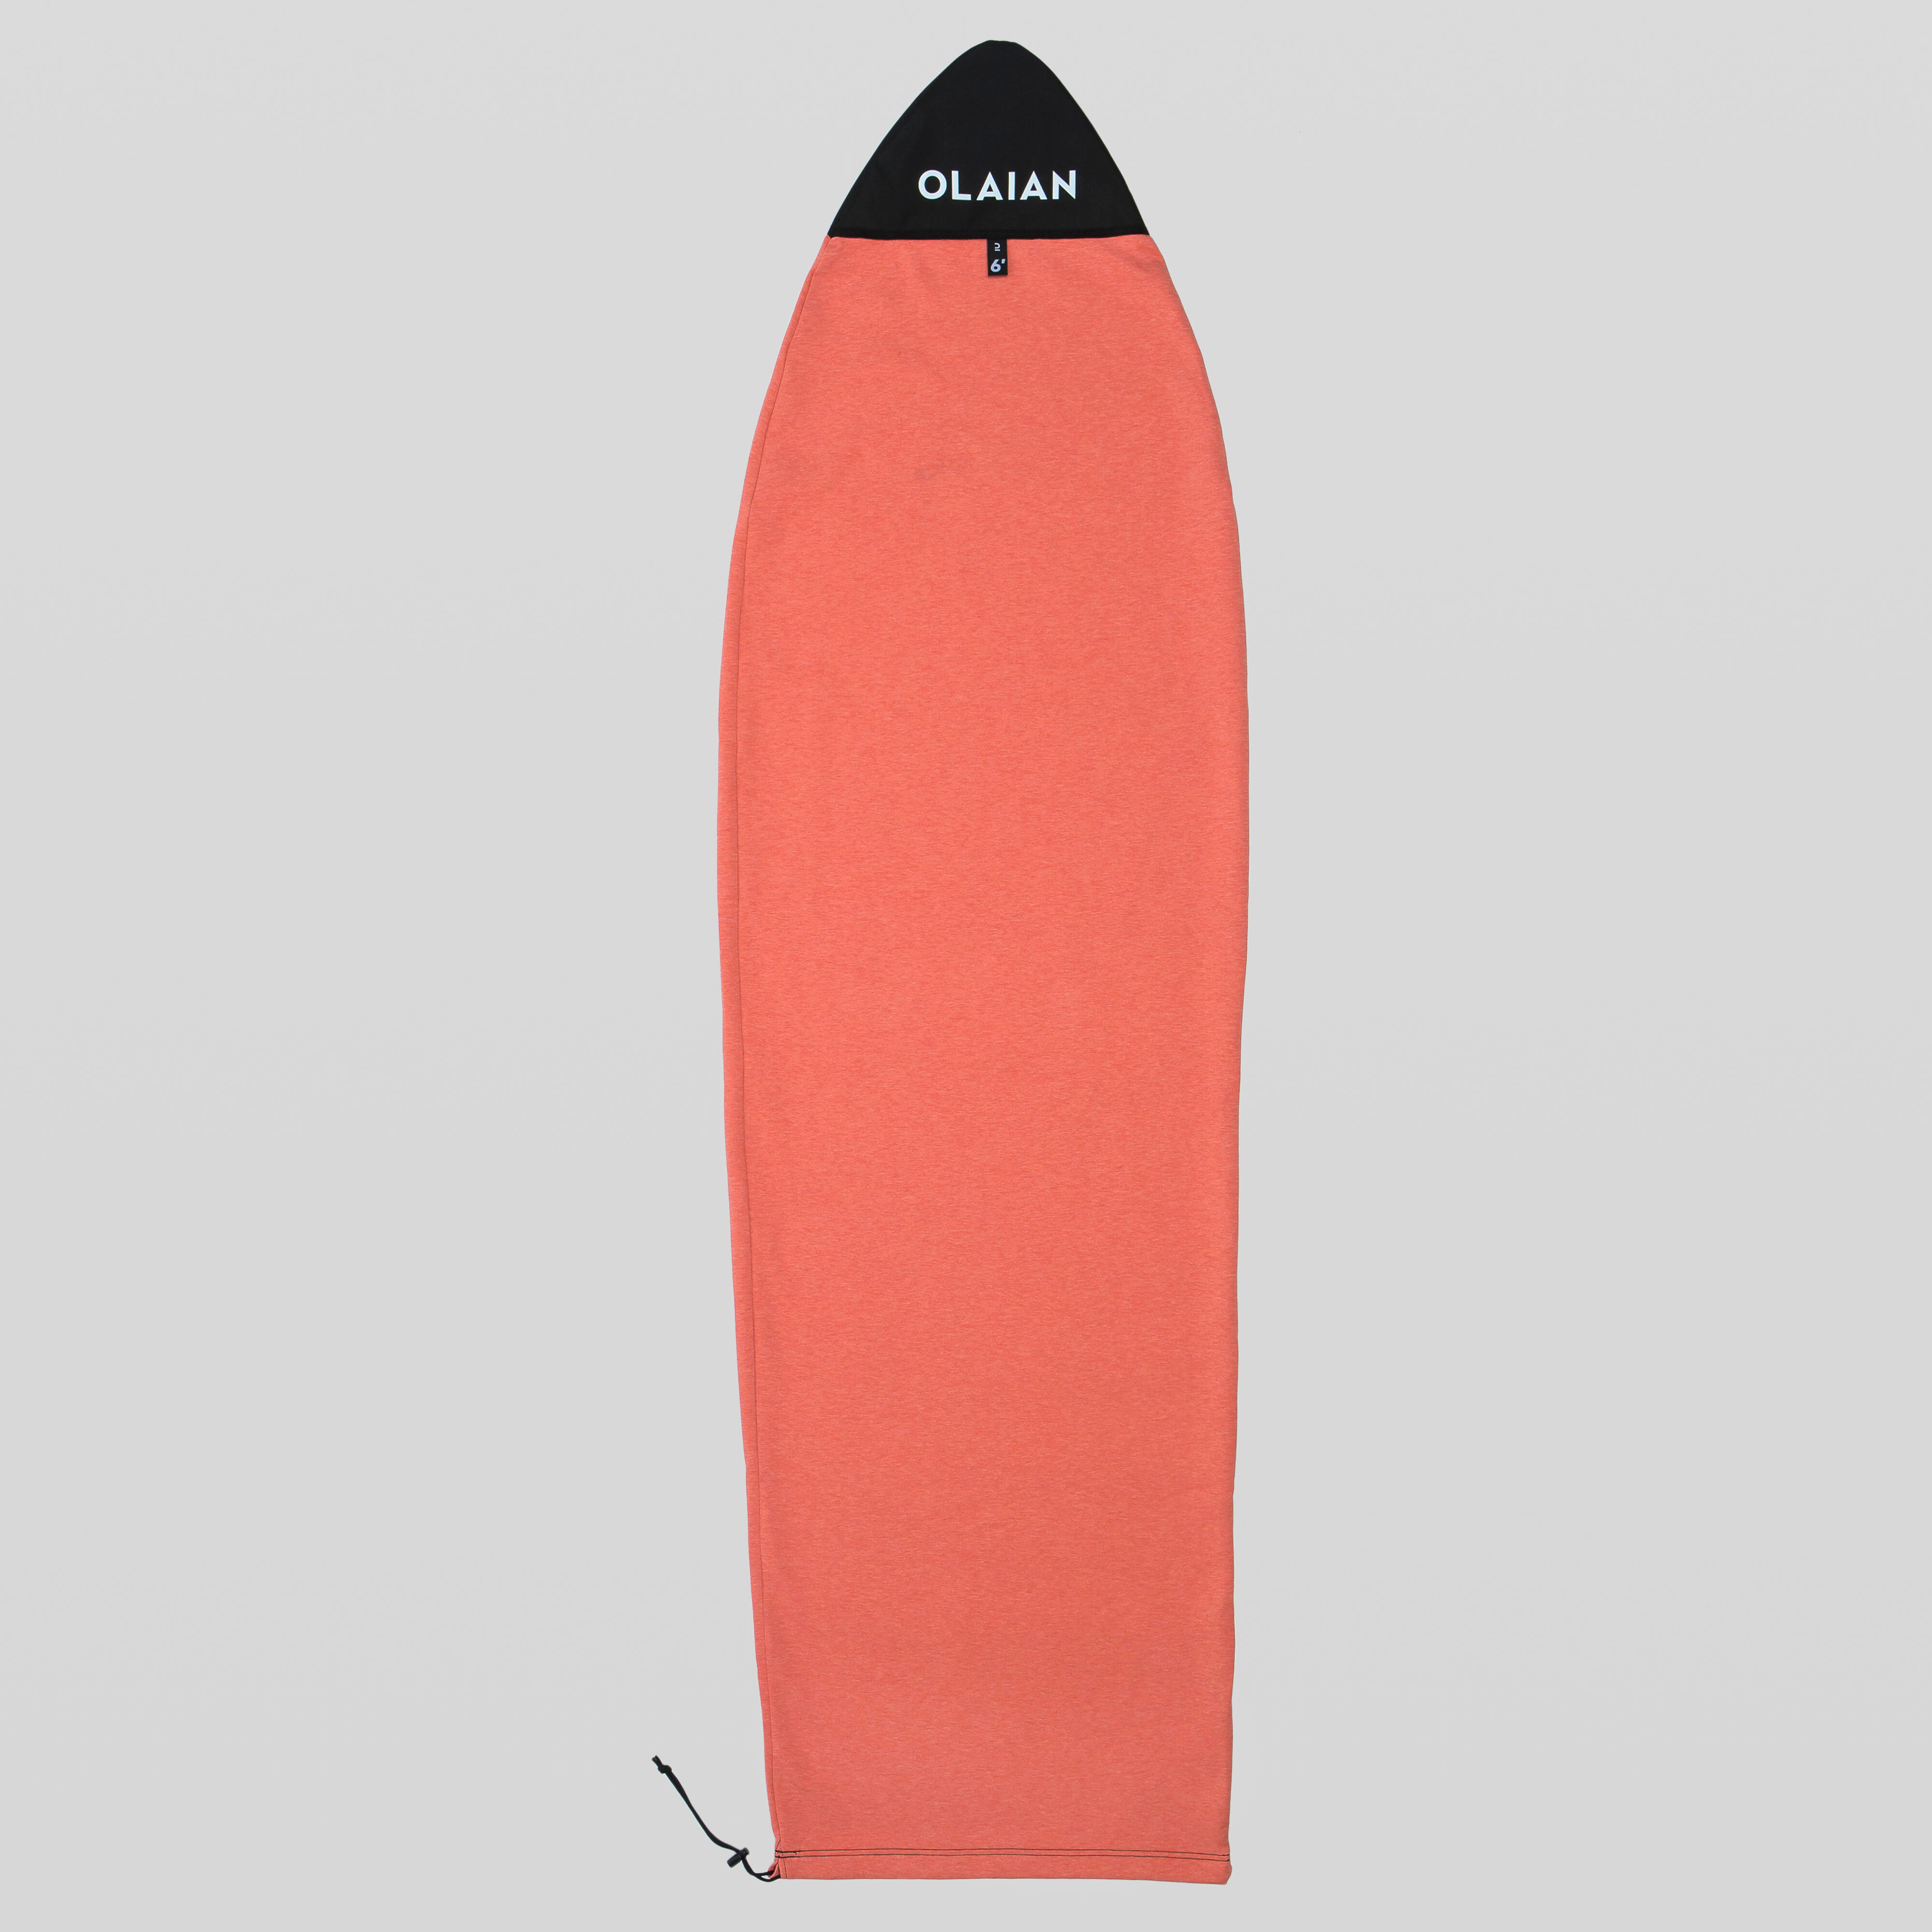 housse chaussette surf pour planche taille maxi 6'2'' - olaian